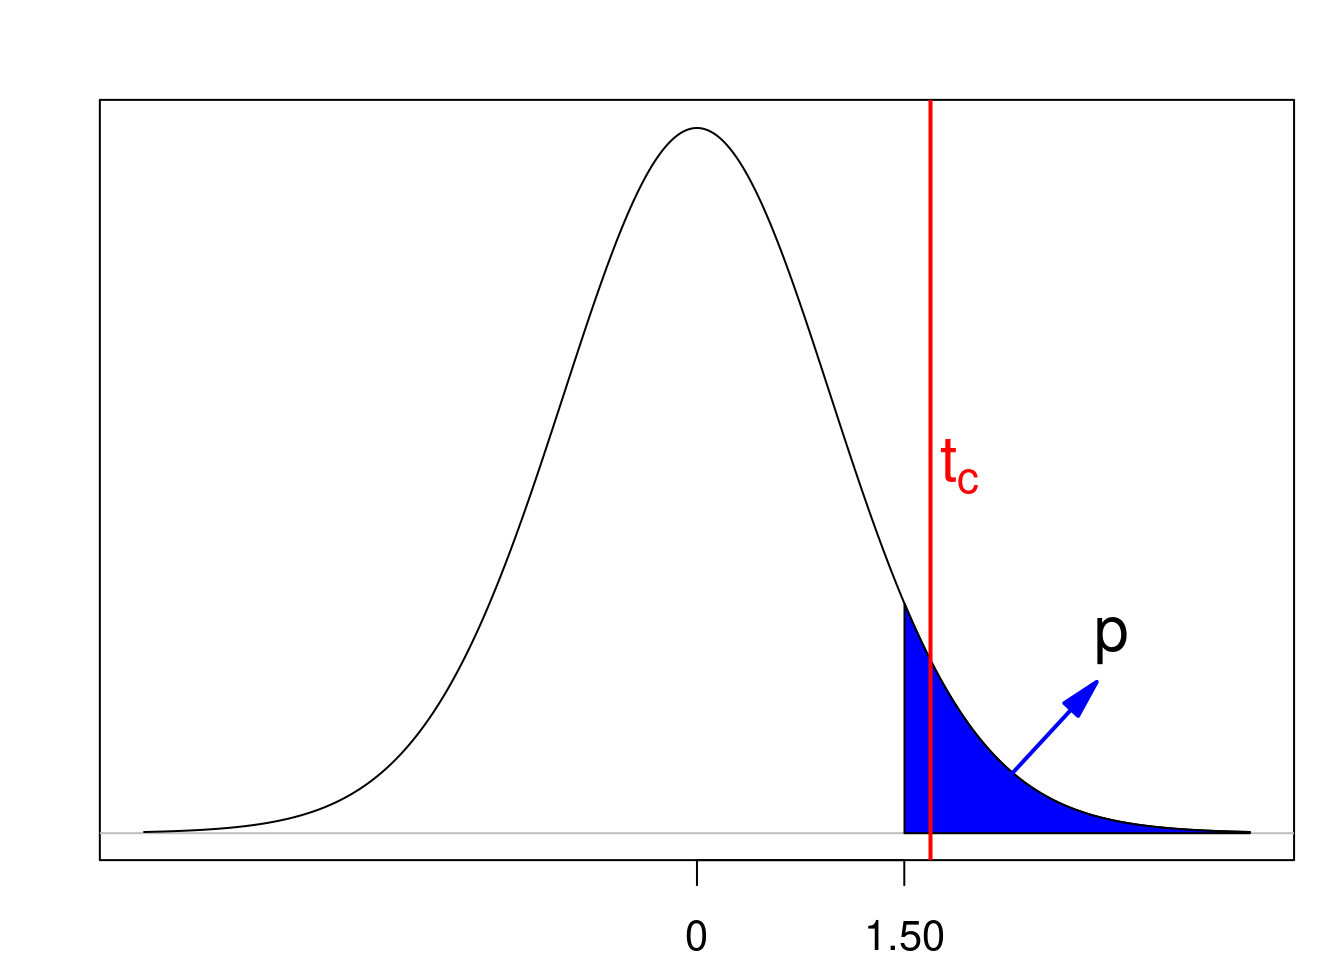 Valor de p para um teste unilateral onde a região crítica é a cauda superior da distribuição. A linha vermelha indica o valor crítico. Nesse exemplo a hipótese nula não é rejeitada.